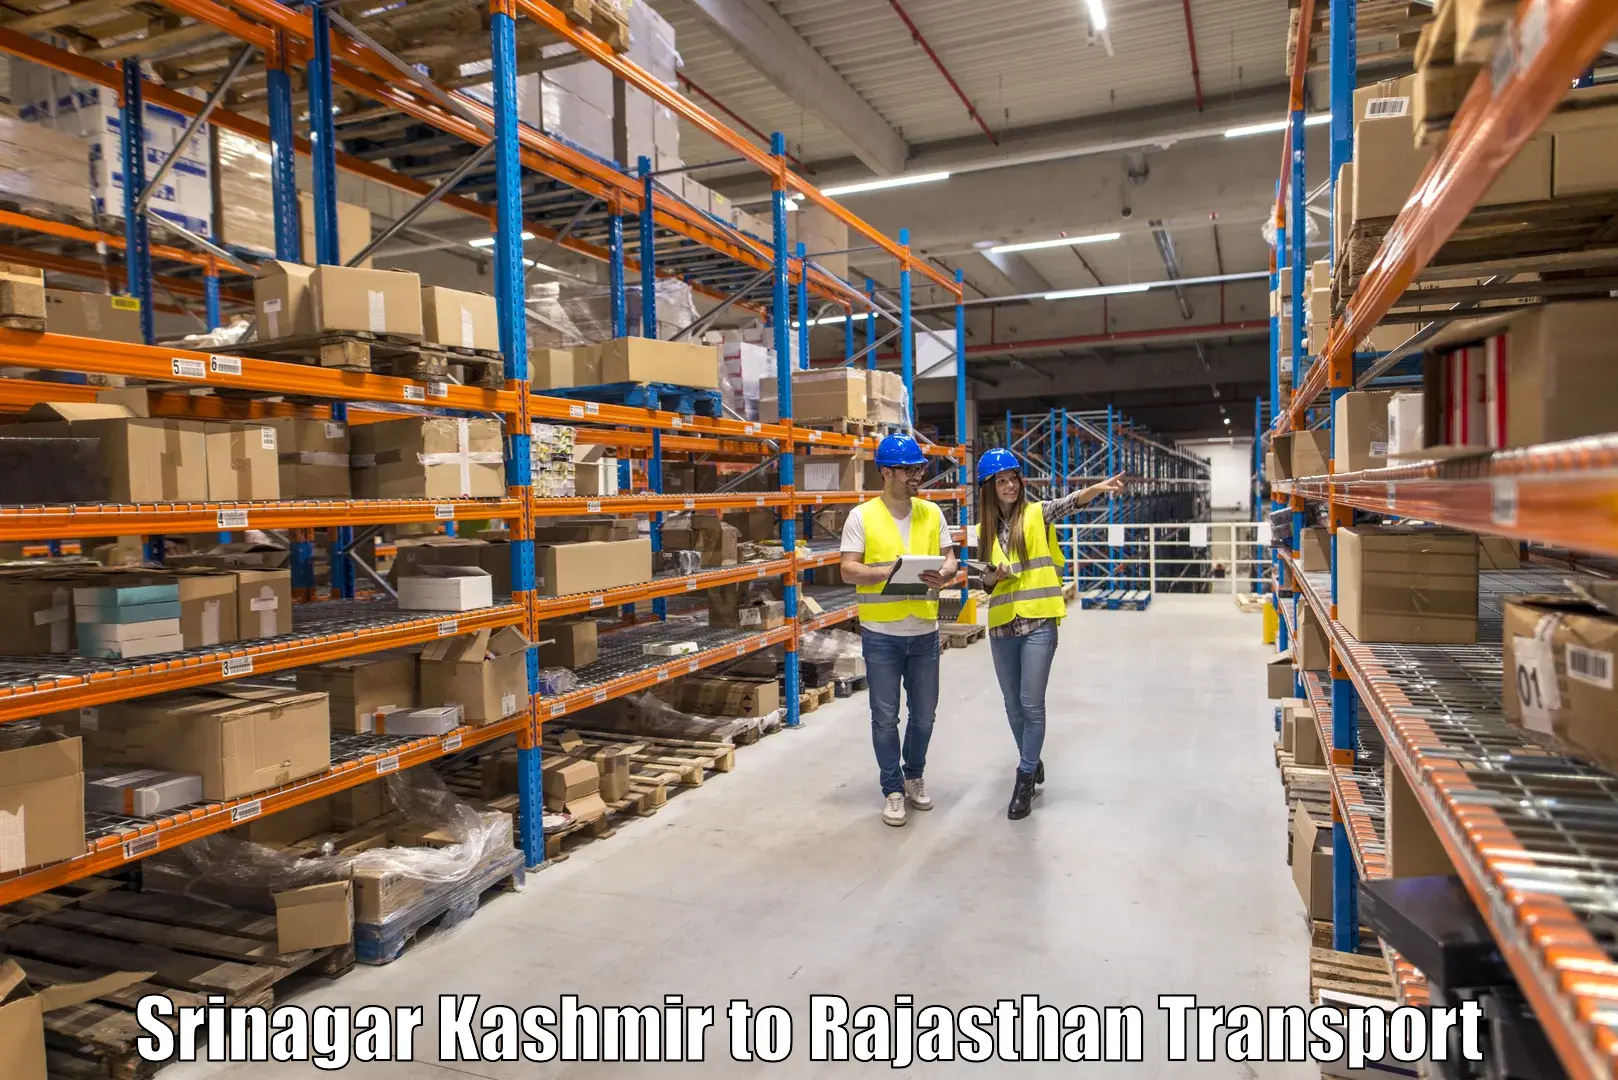 Air freight transport services Srinagar Kashmir to Didwana